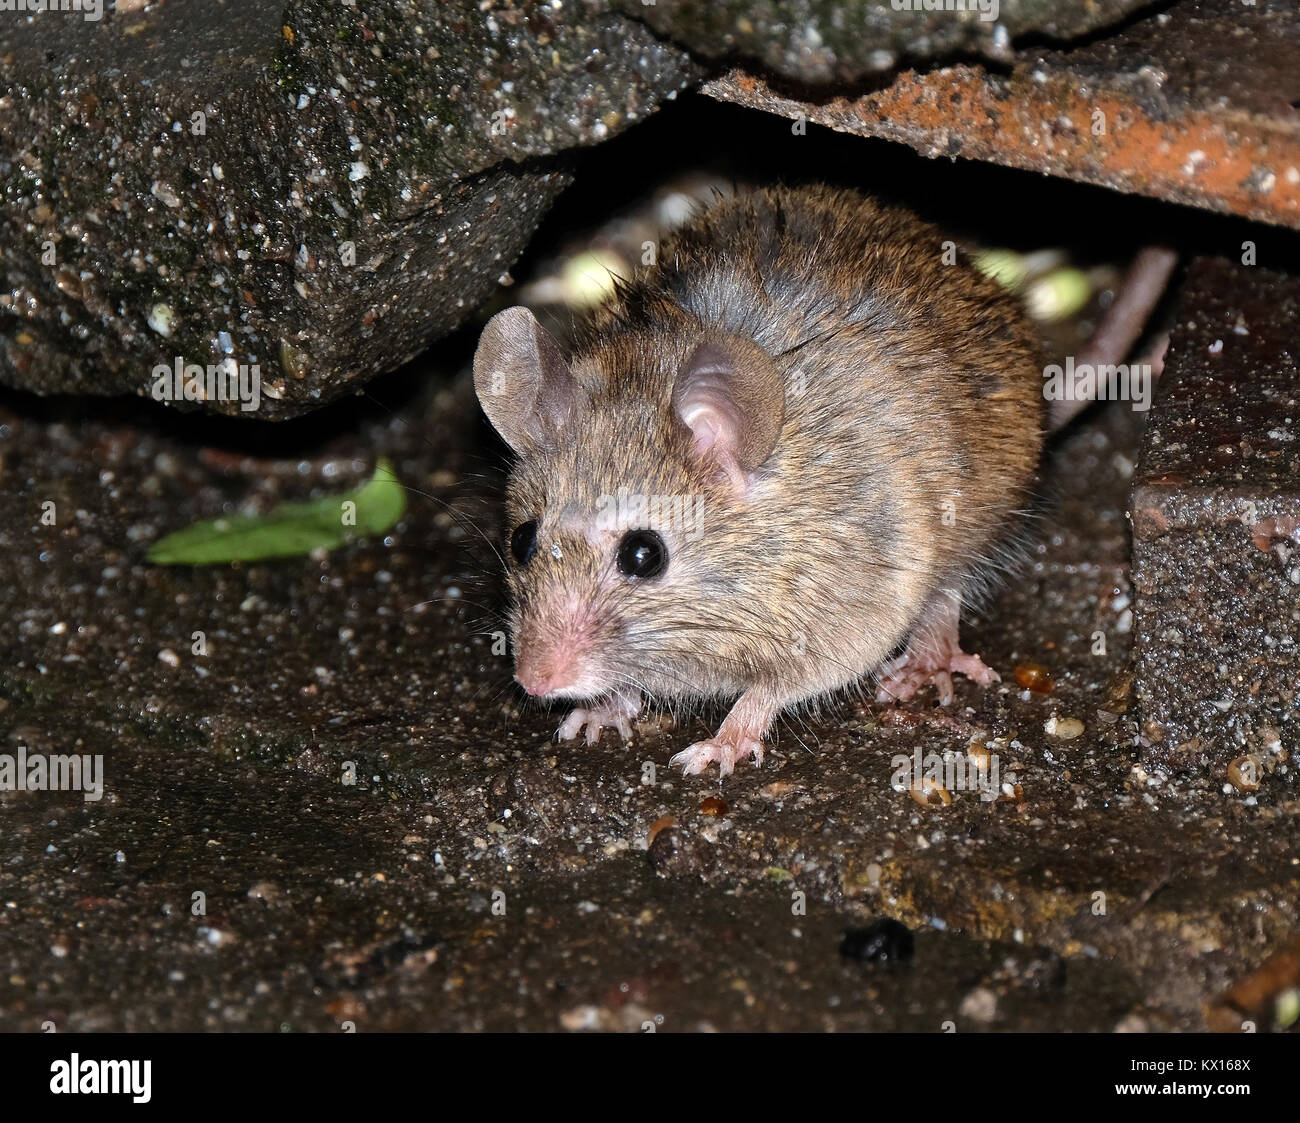 Mice in an urban garden. Stock Photo